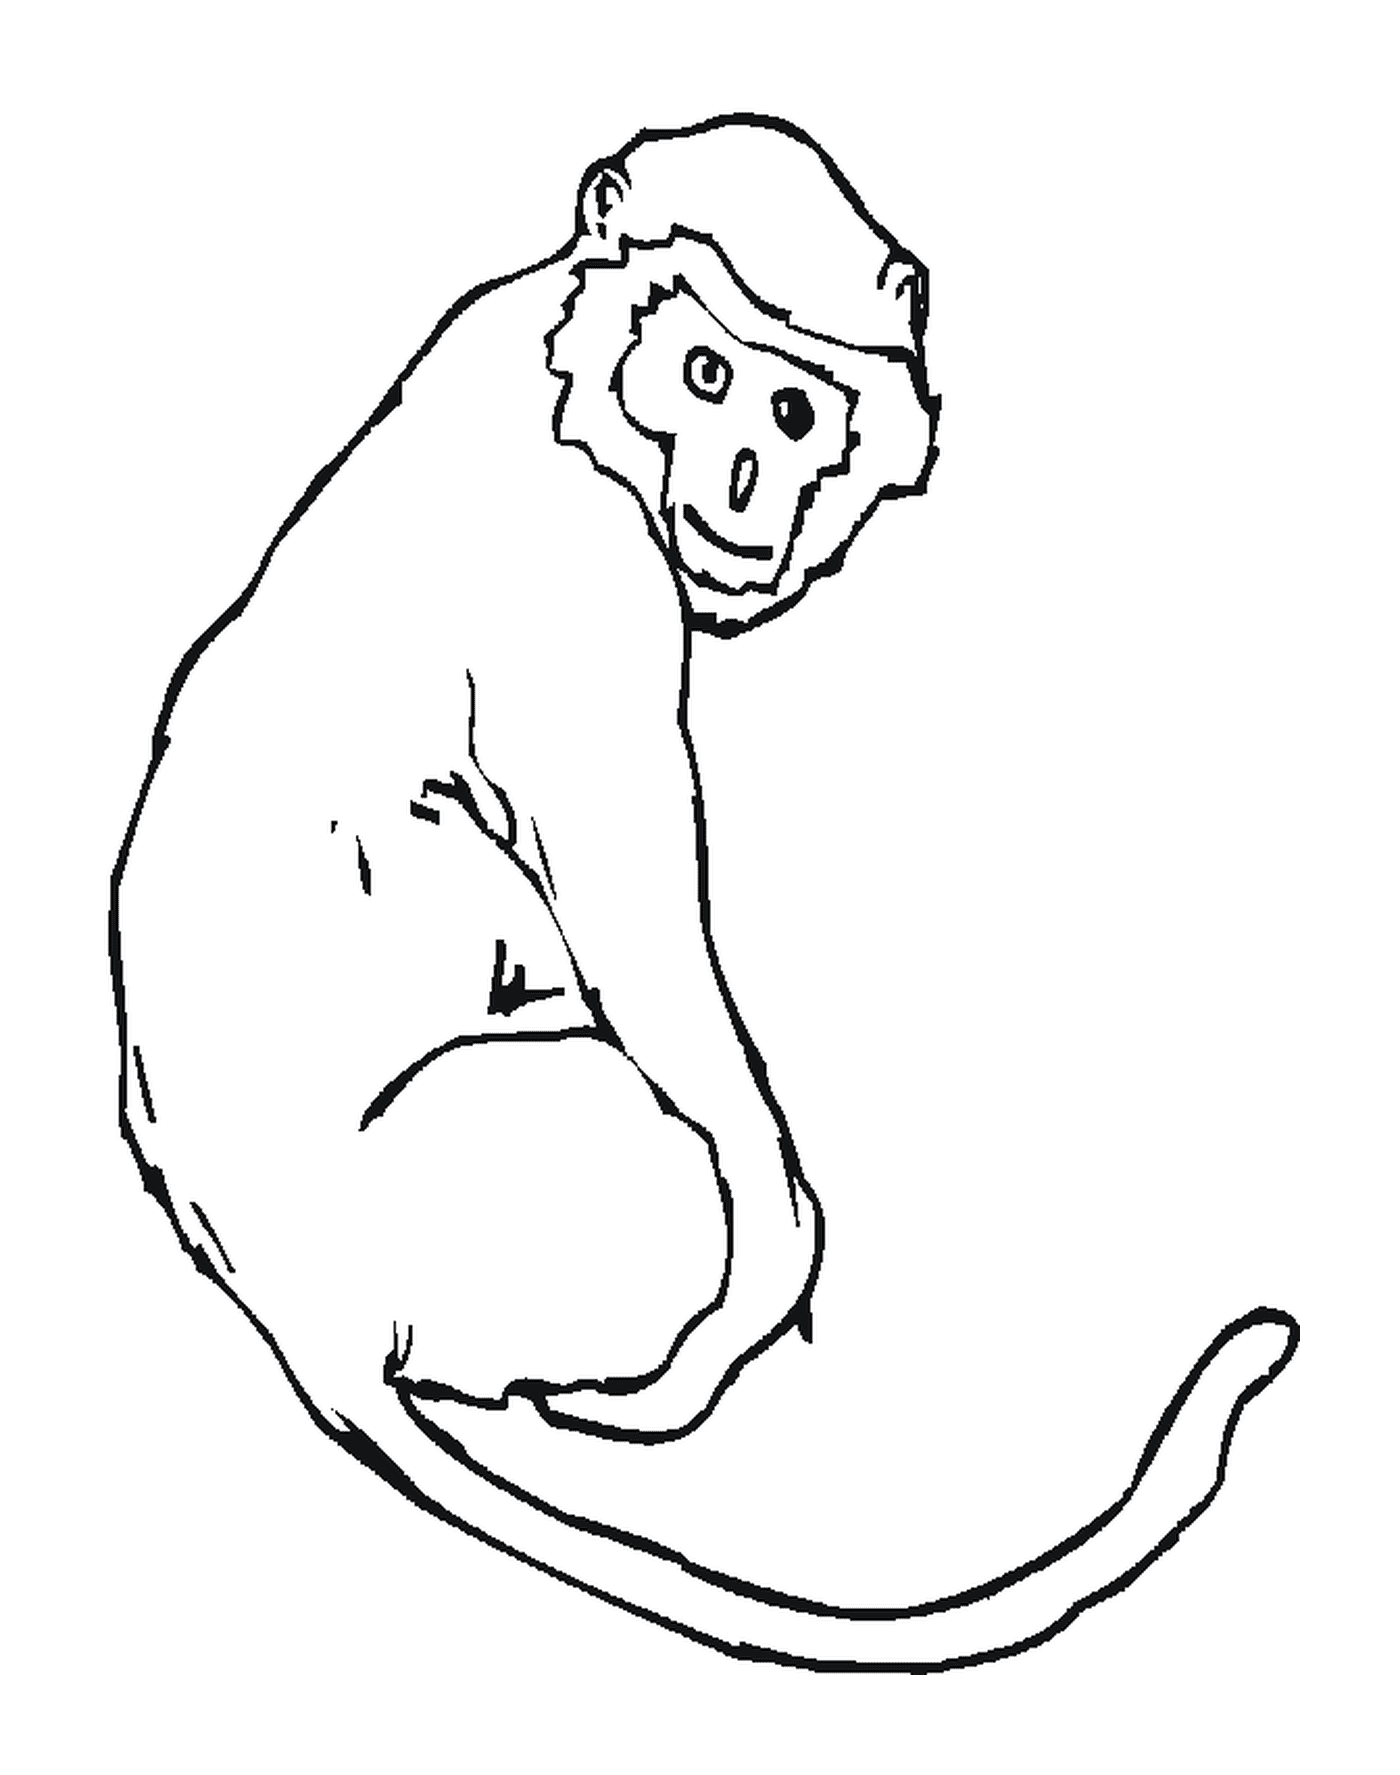  Macaco com cauda longa 